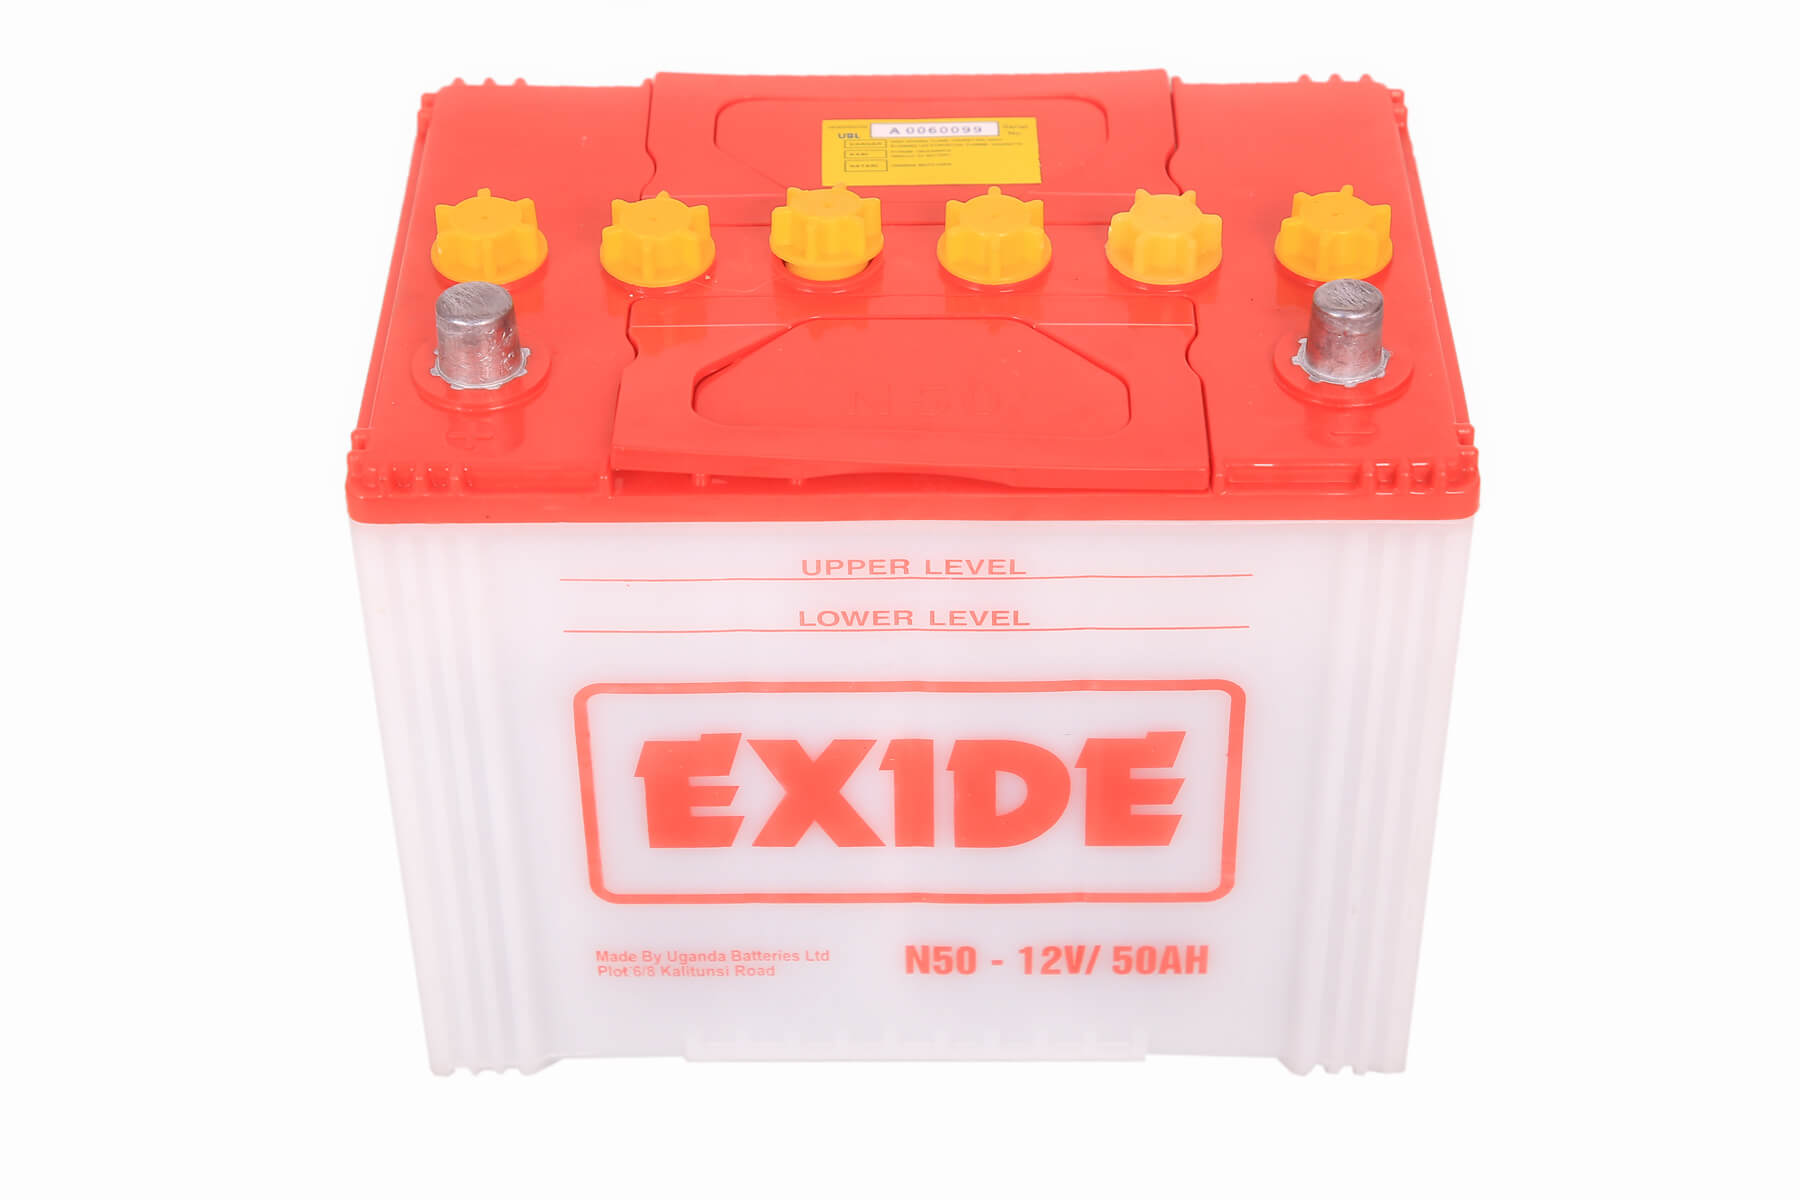 N50 UBL EXIDE Maintenance Free Car Battery - VENJOH MOTOR BATTERIES